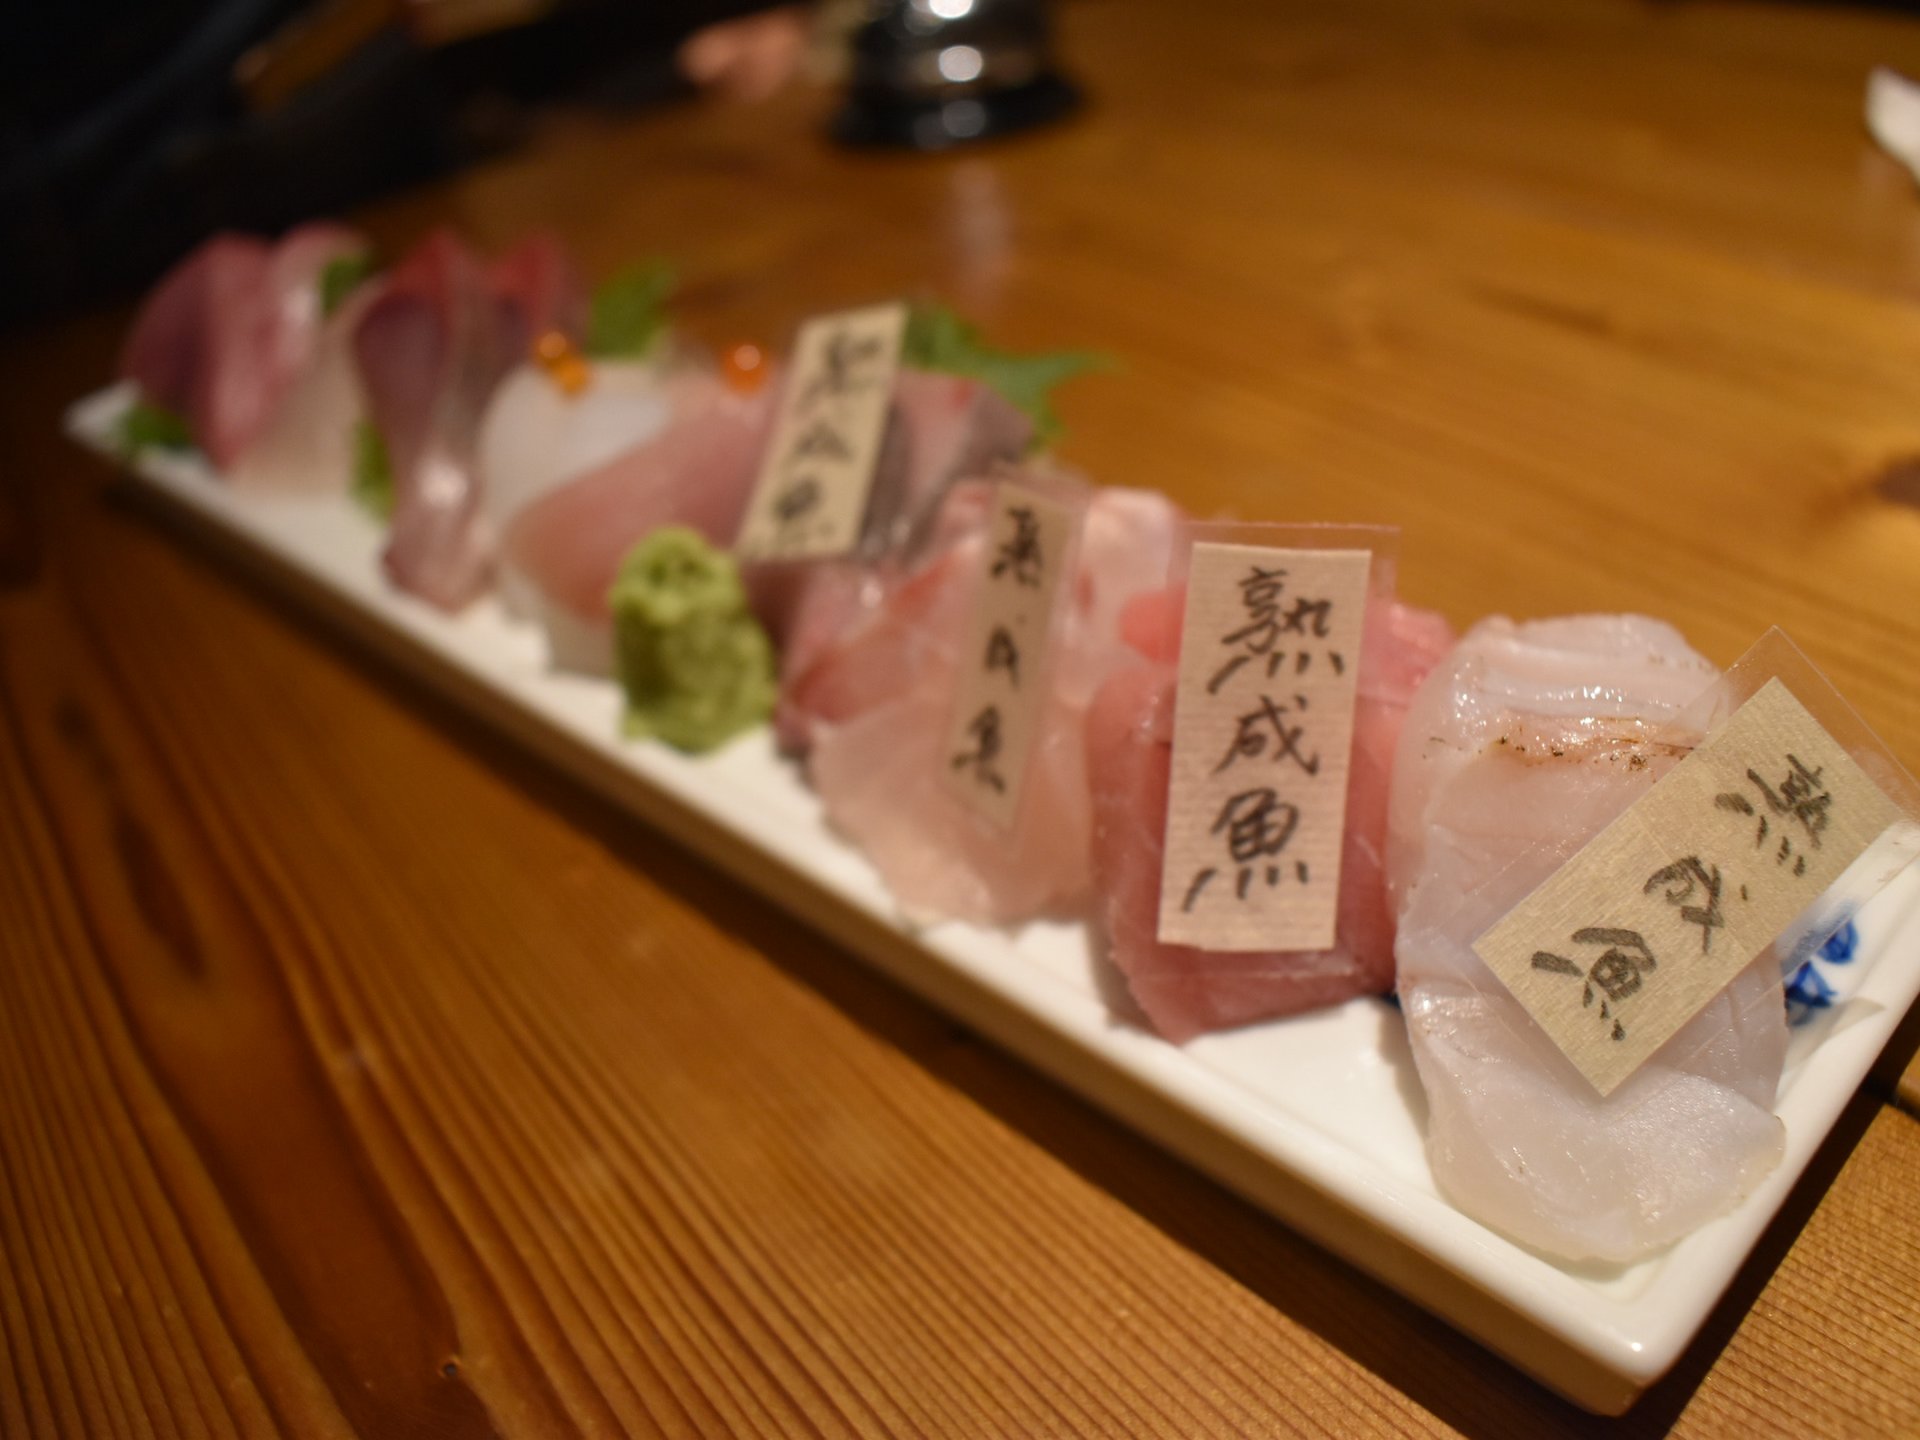 大阪難波でコスパ抜群の熟成魚を堪能！予約必須の人気店 鯛之鯛 2軒目はおすすめバーでシメパフェを満喫